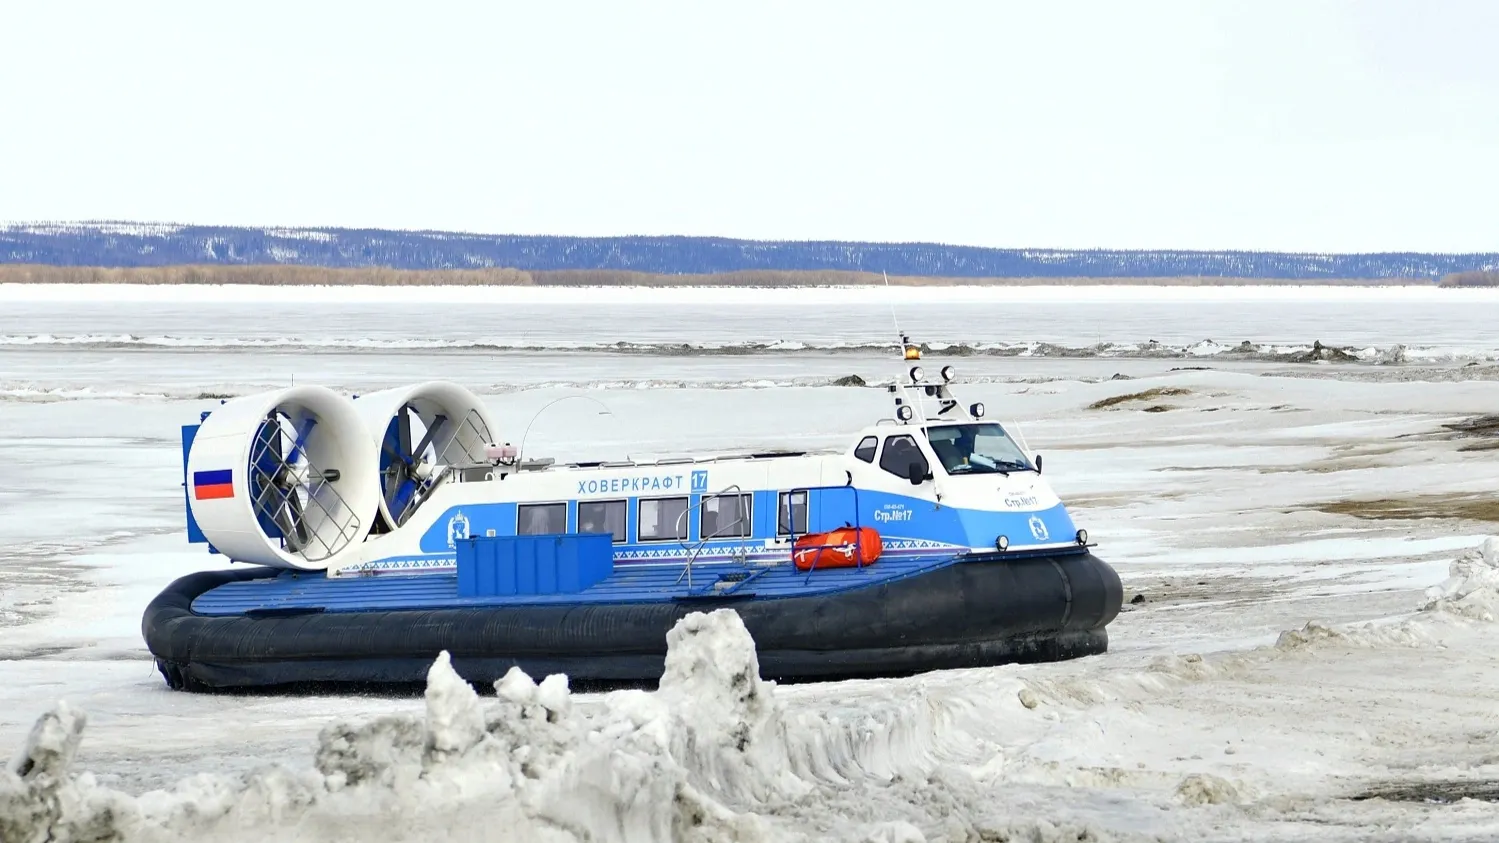 Суда "Нептун-23" вышли на линию, пока на реке не оборудуют зимнюю переправу для автотранспорта. Фото: Андрей Ткачёв / «Ямал-Медиа»